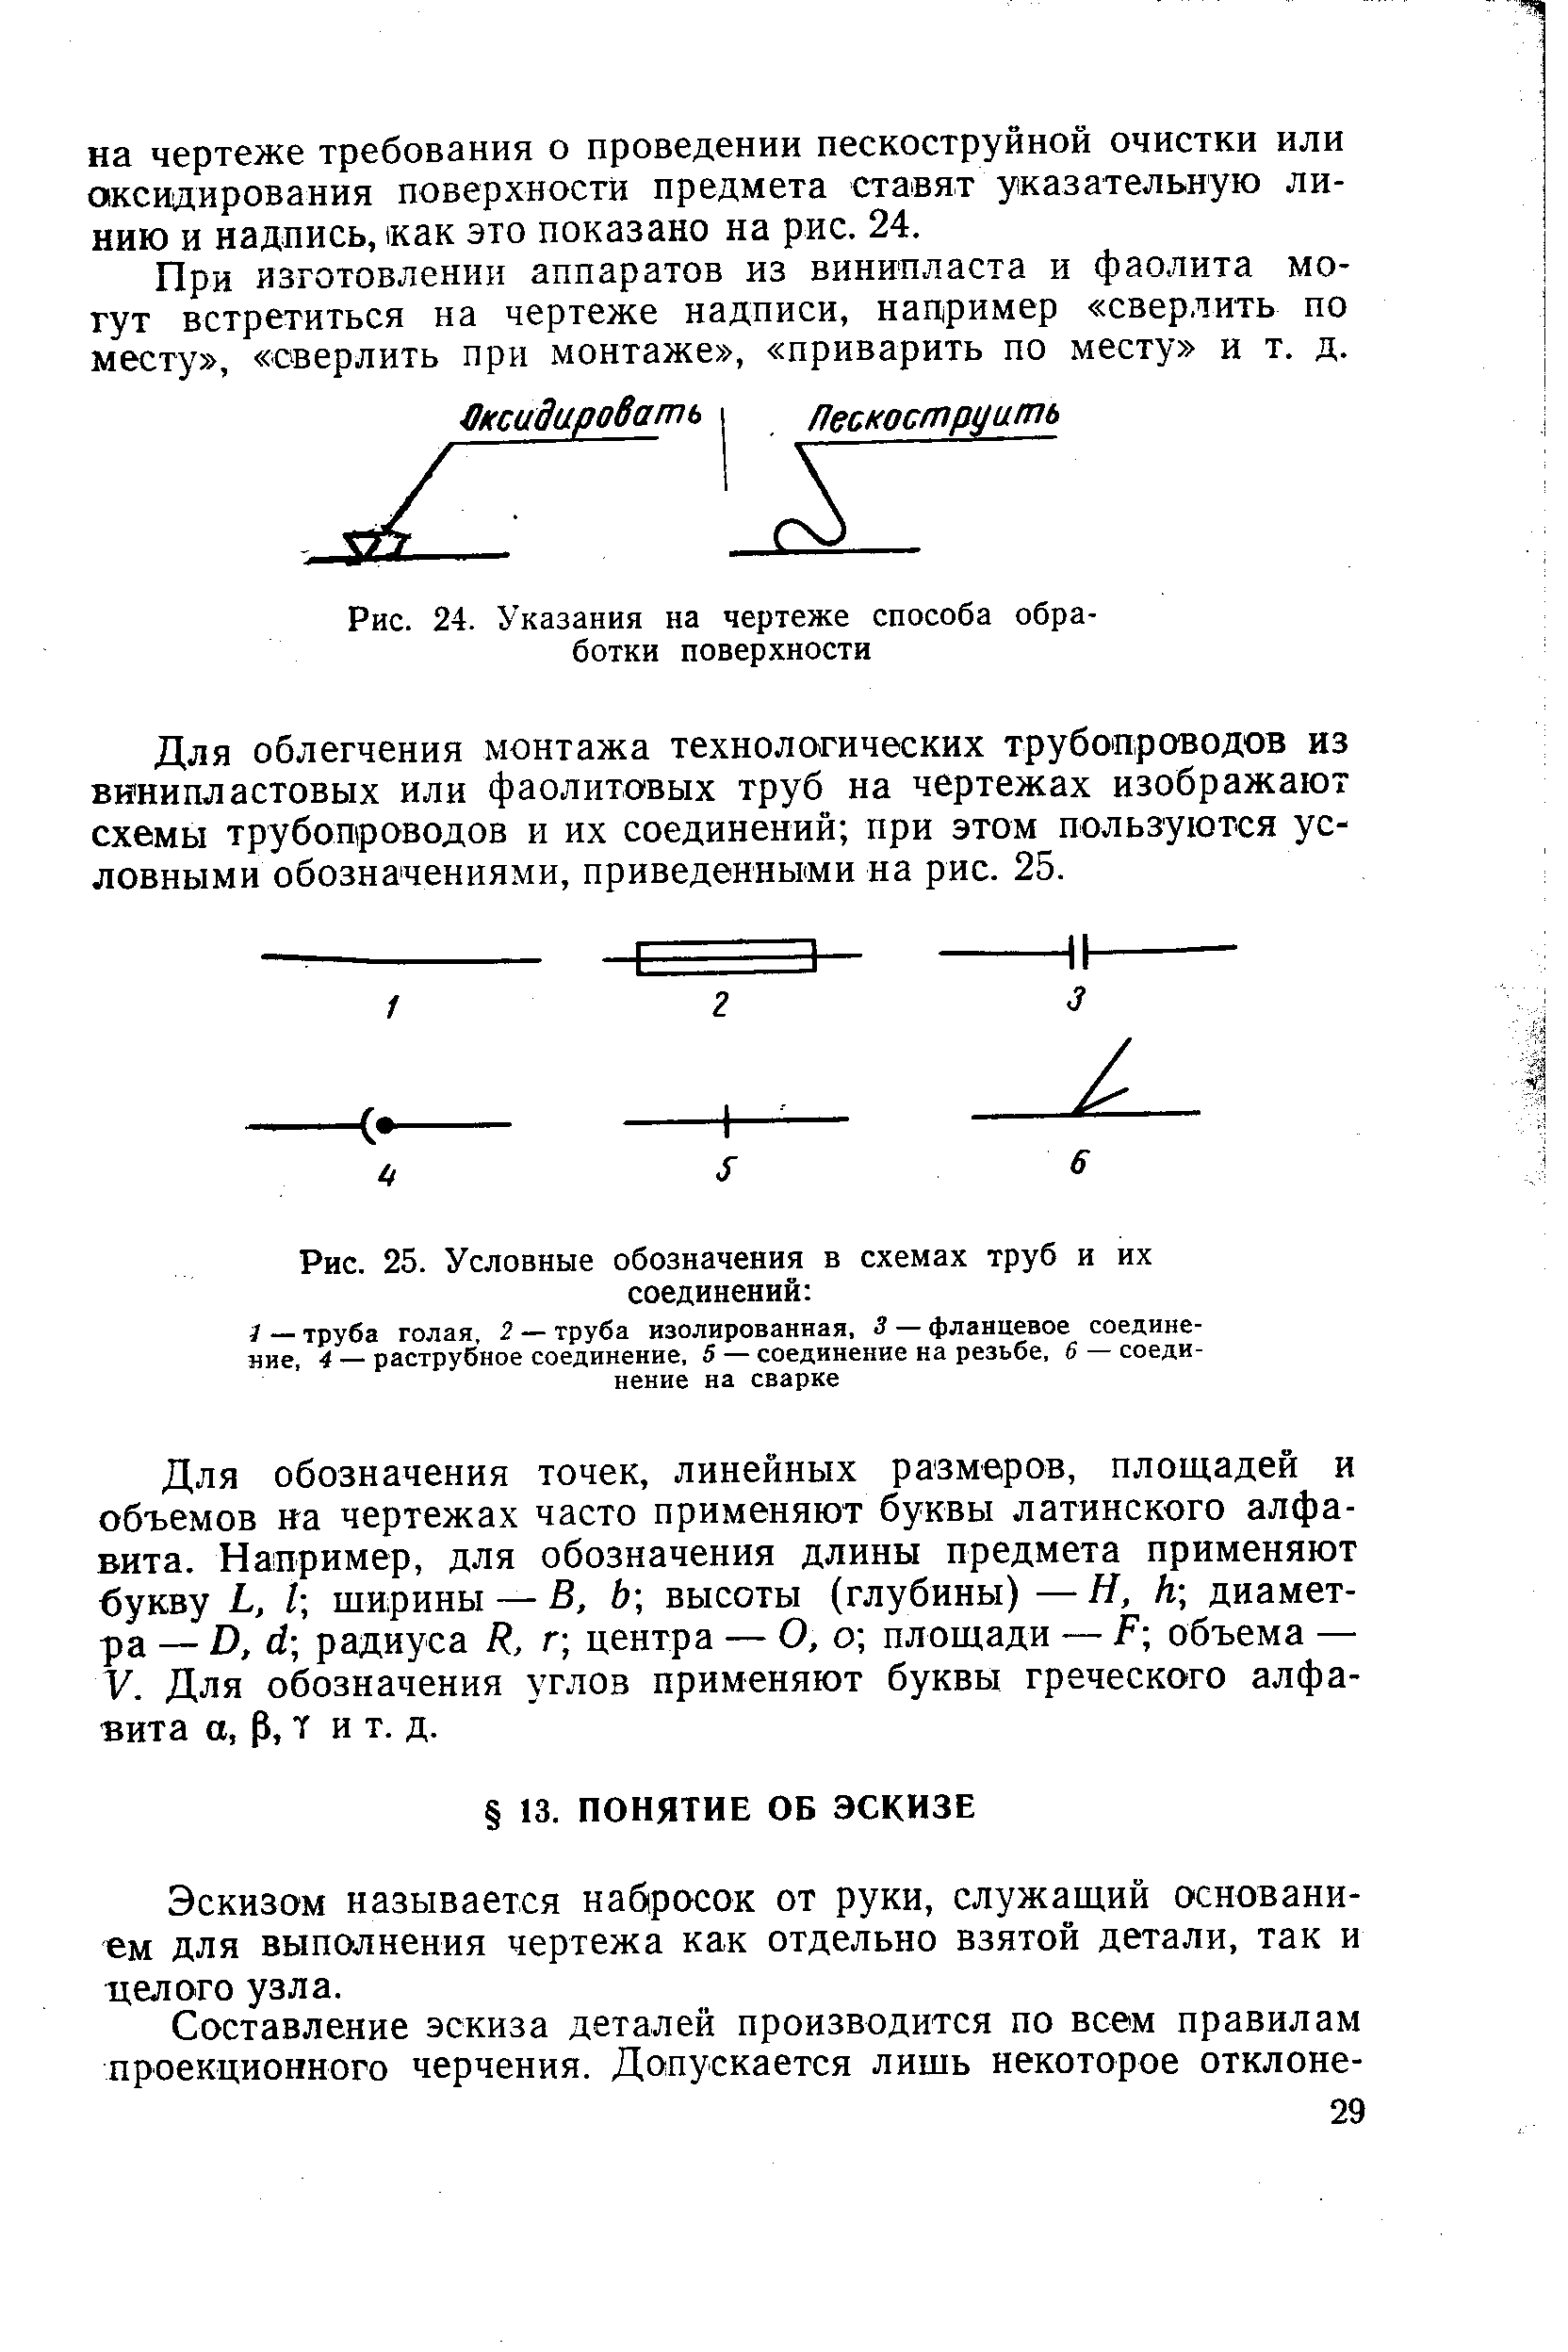 Рис. 25. Условные обозначения в схемах труб и их соединений 
